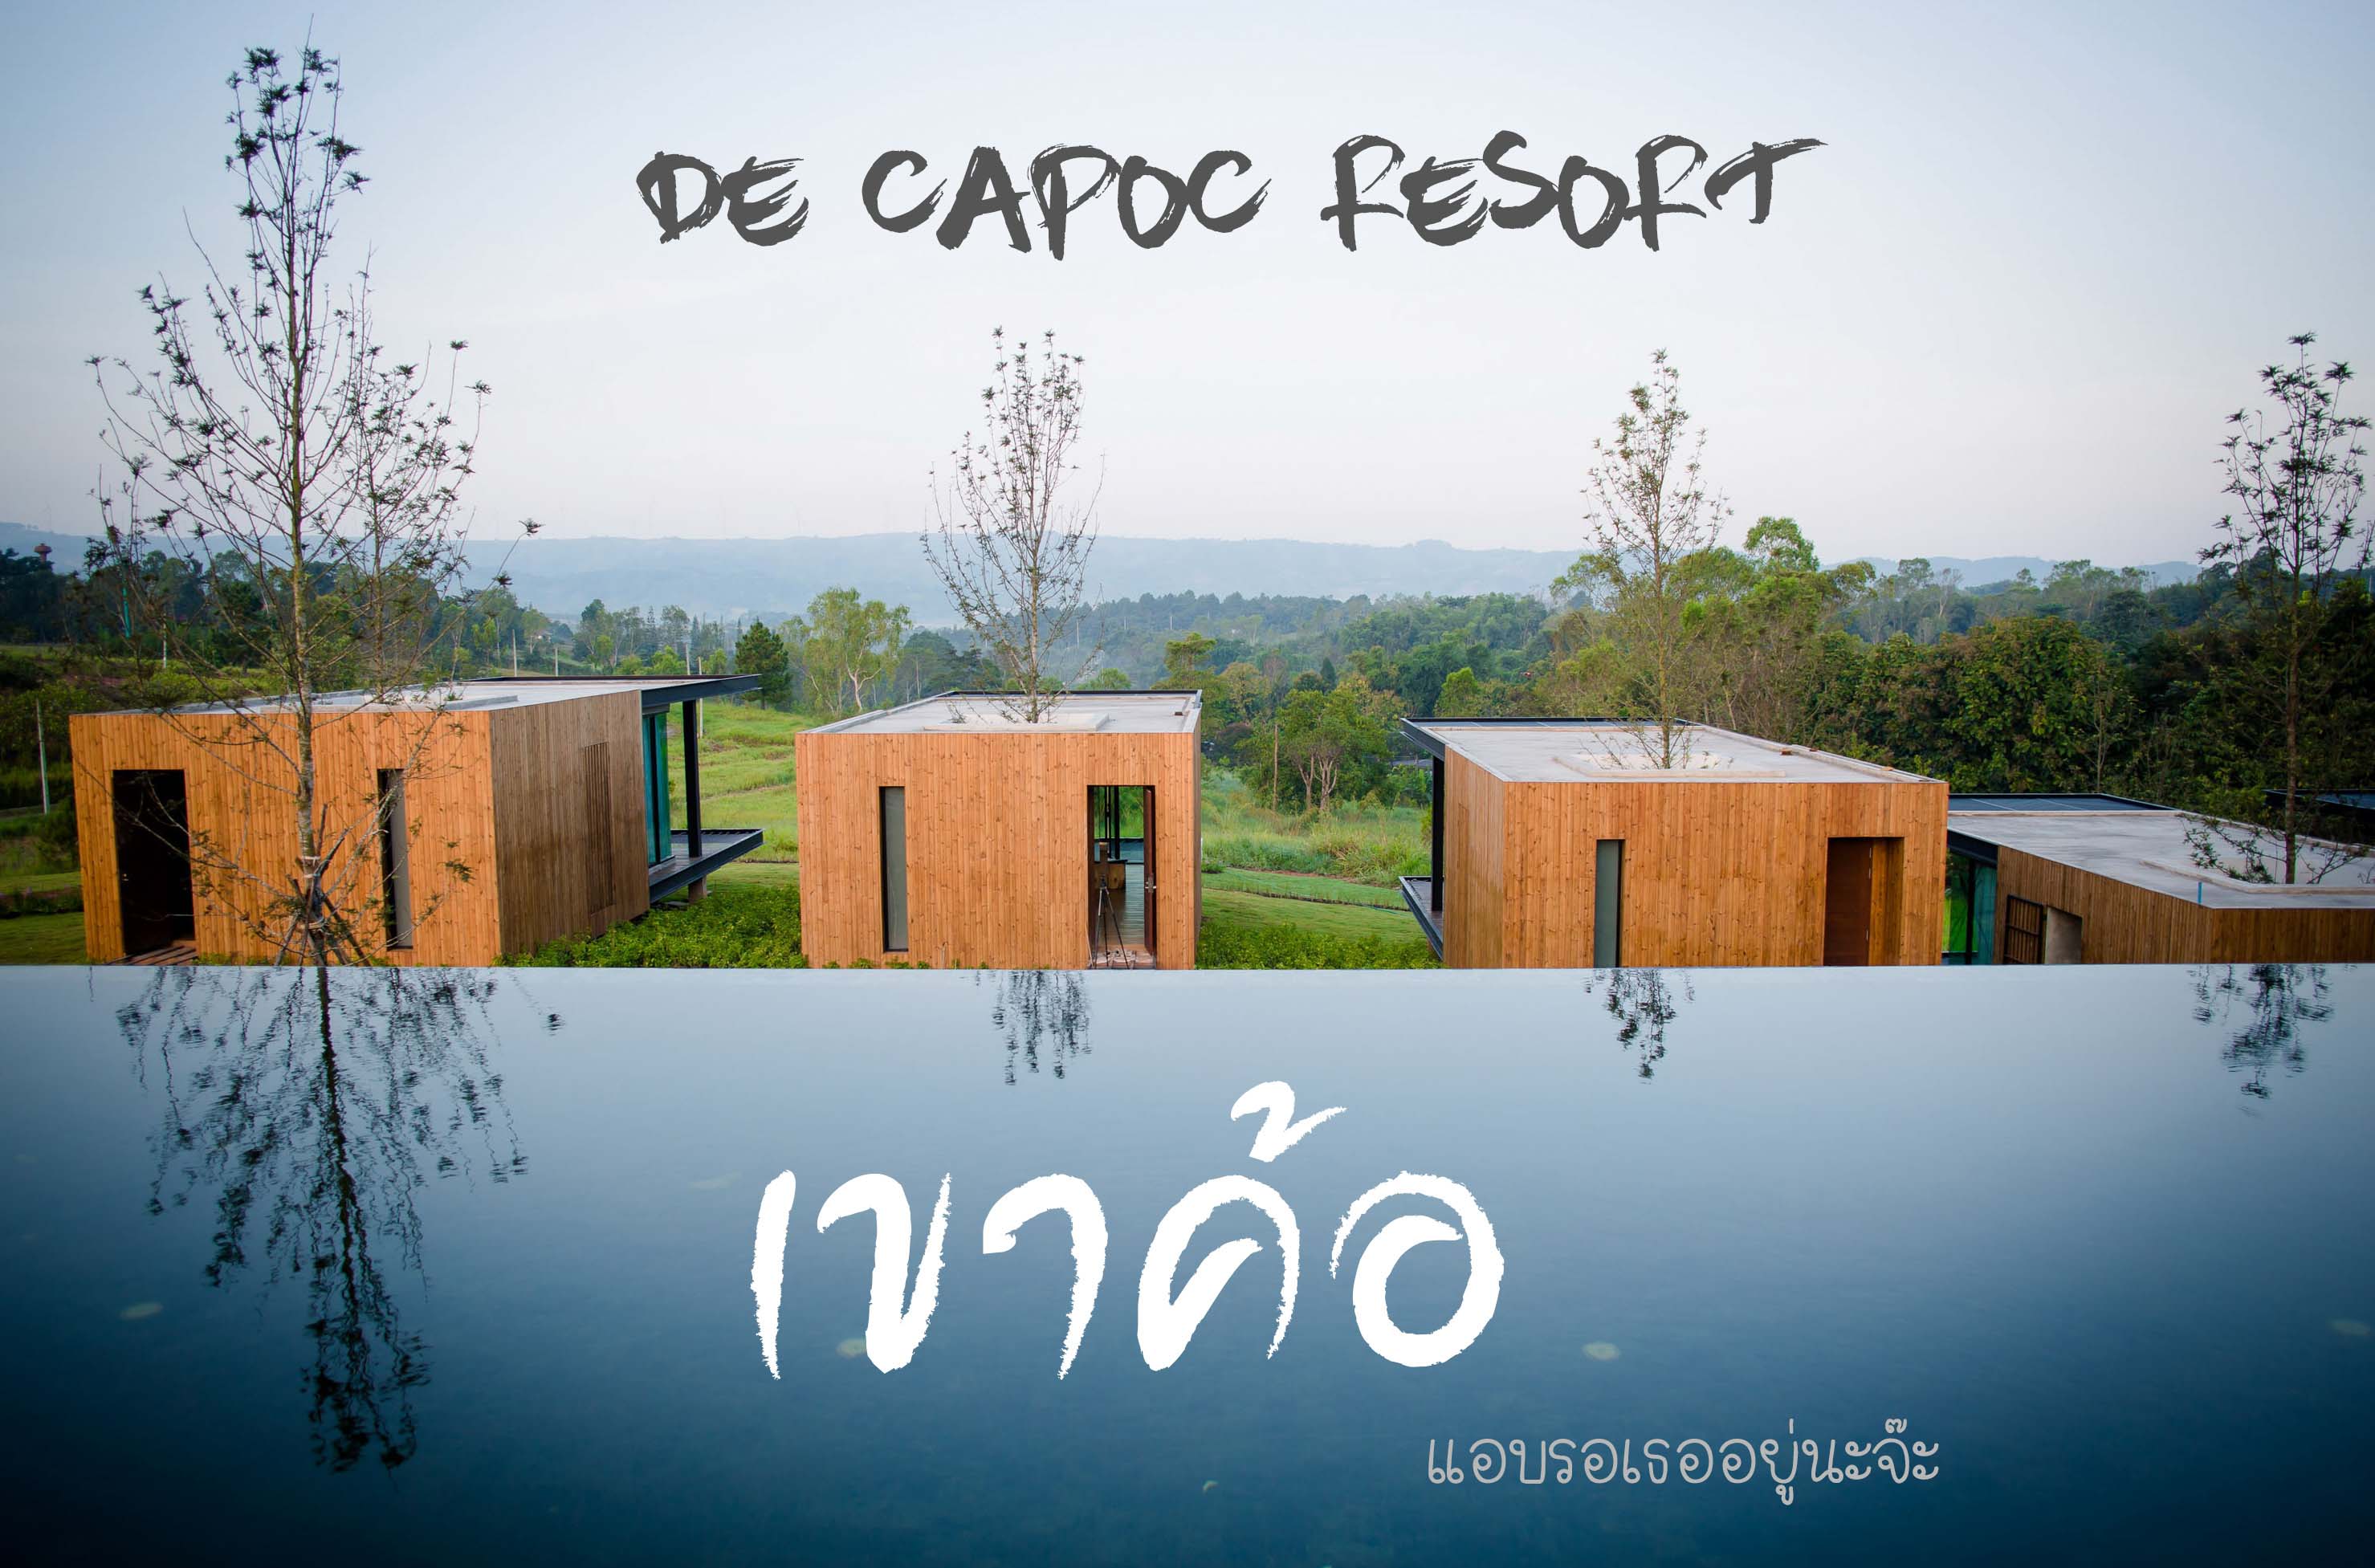 DE CAPOC resort ที่พักเขาค้อมีสระว่ายน้ำ